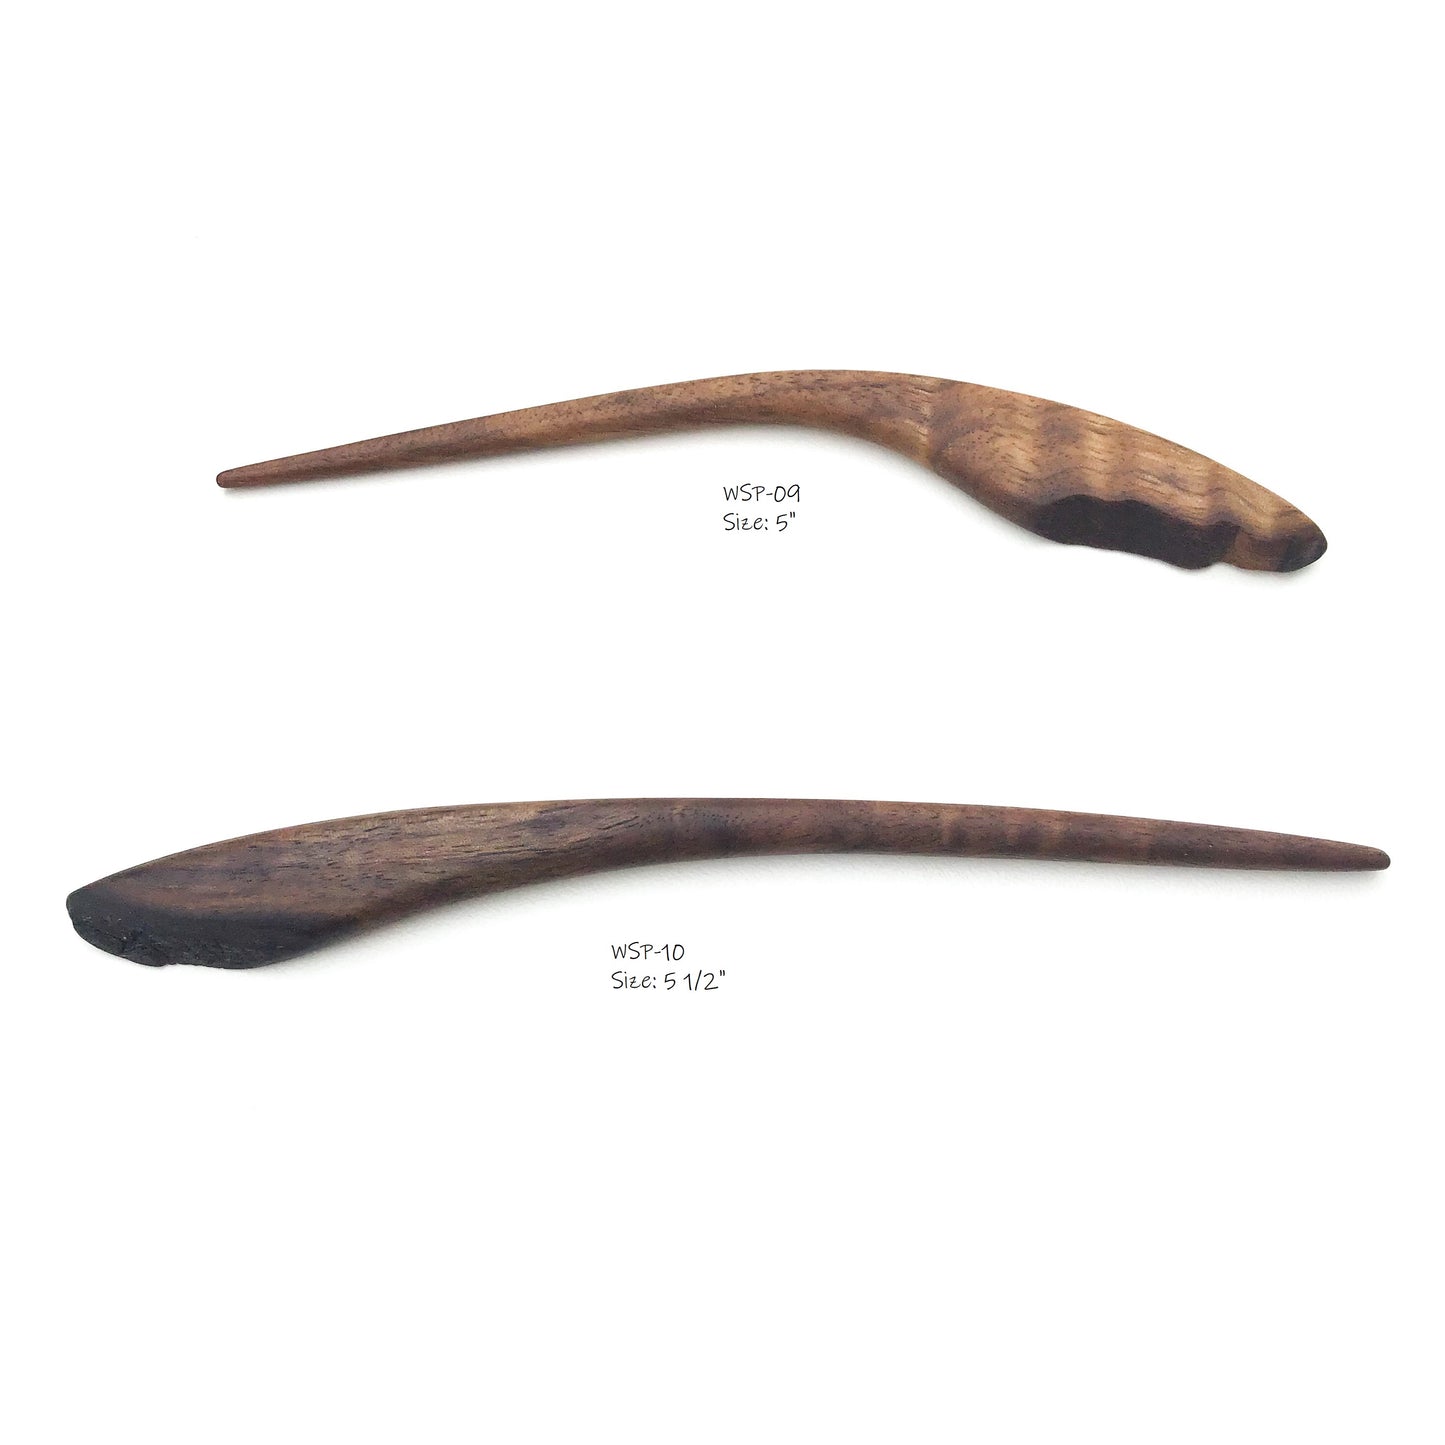 Live Edge Black Walnut Wood Shawl & Sweater Pins - Wooden Hair Pins